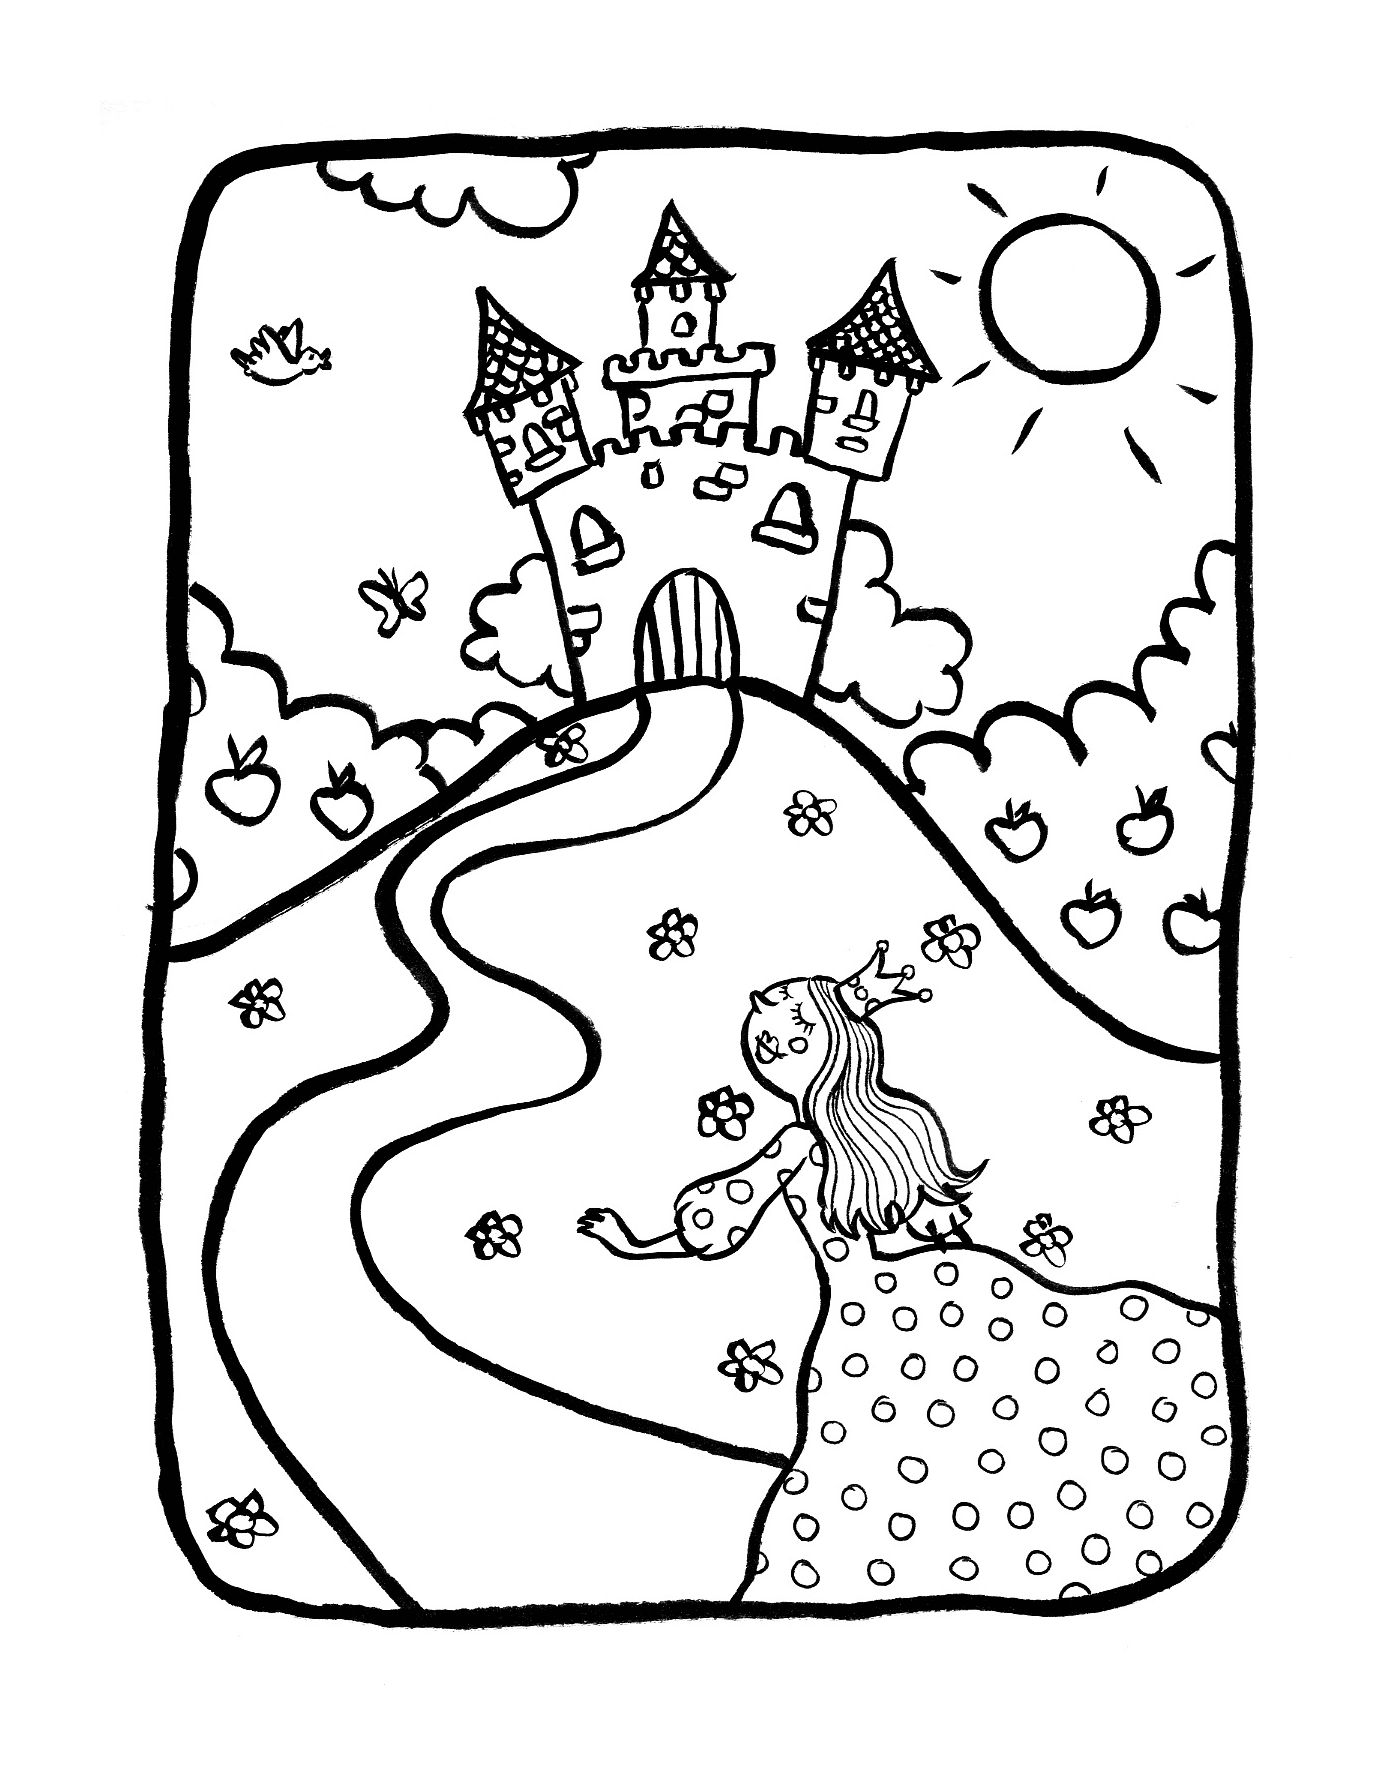  Uma menina na frente de um castelo com princesas 